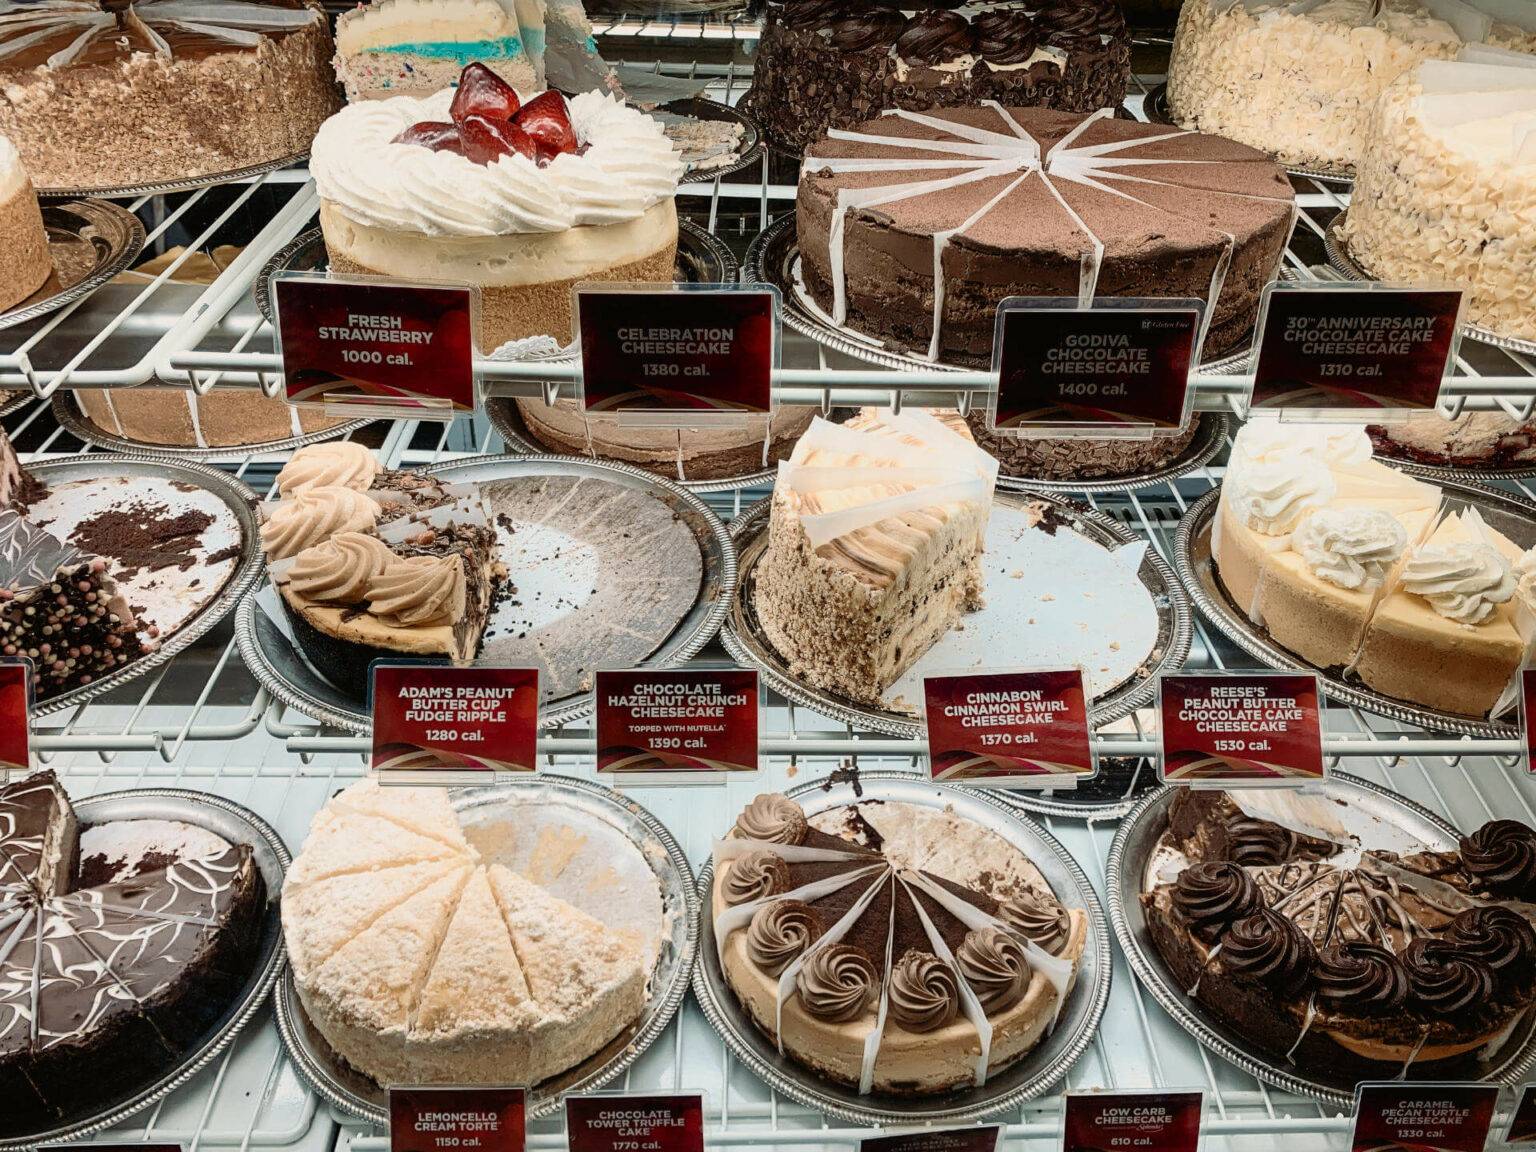 Ein Besuch in der Cheesecake Factory ist ein Muss auf jeder USA-Reise.